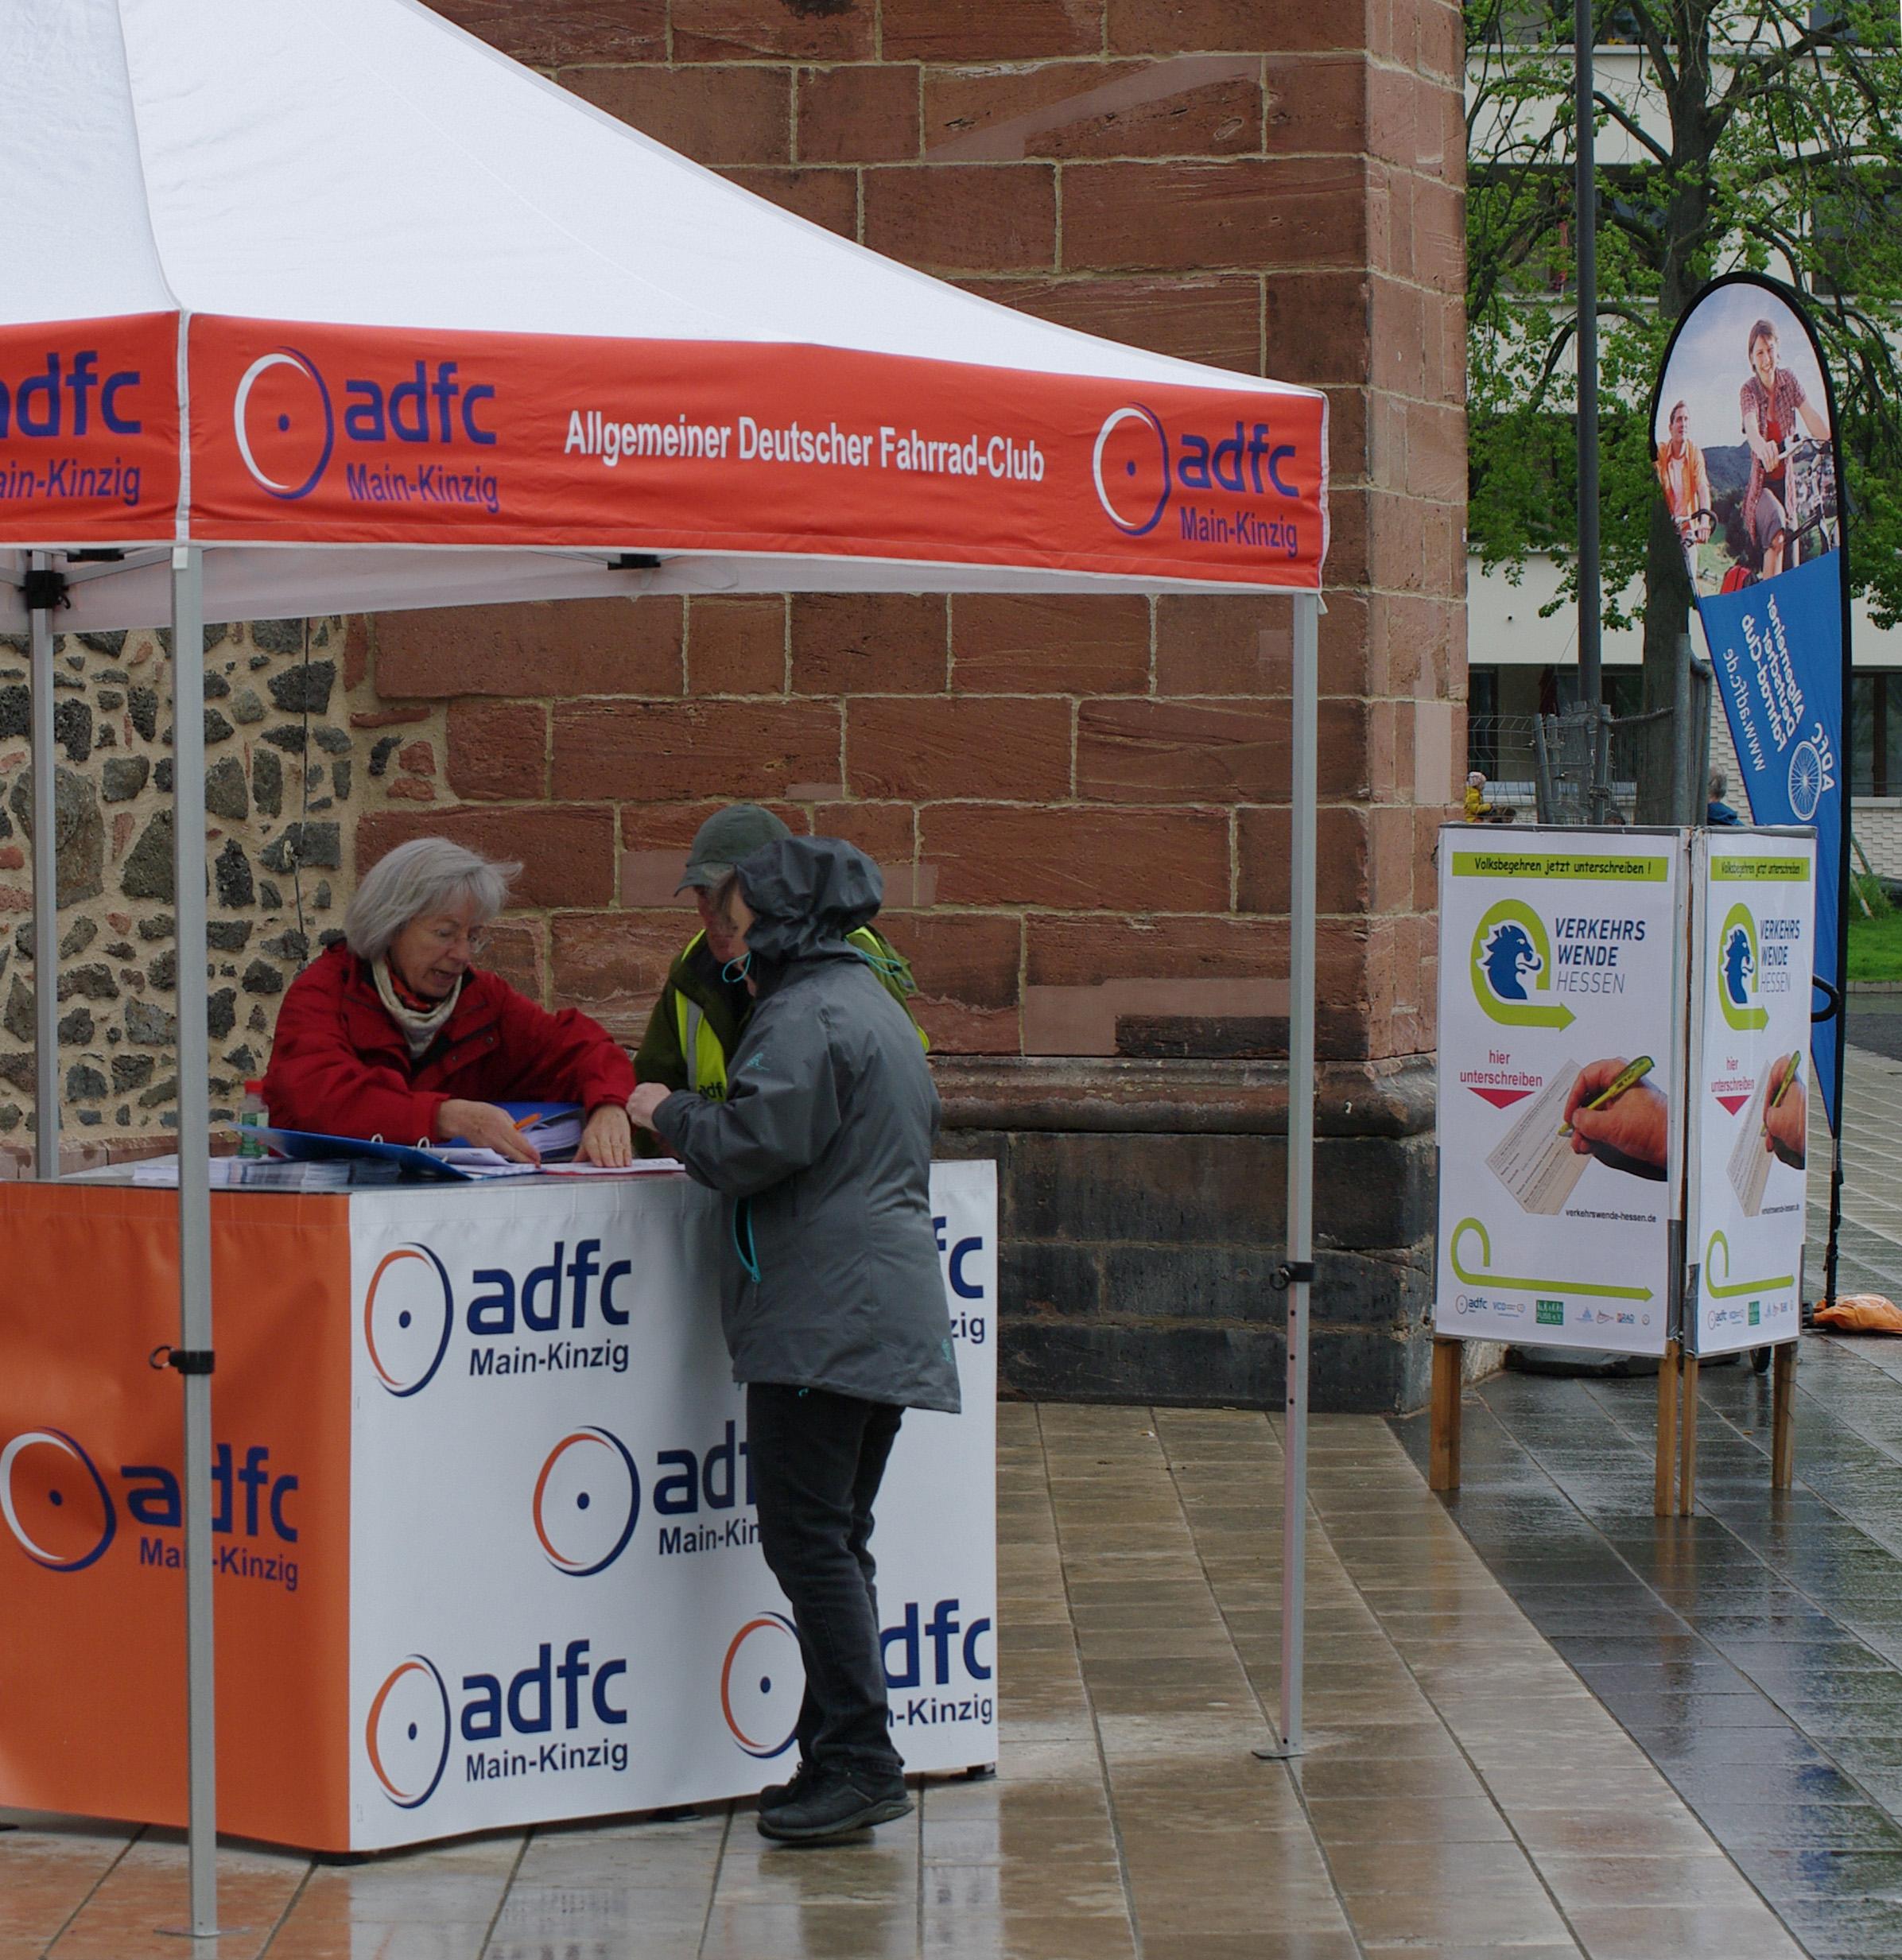 Ein Zelt mit dem Logo des adfc steht im Regen auf einem Platz . Drei Menschen stehen am Stand und sprechen mit einander.